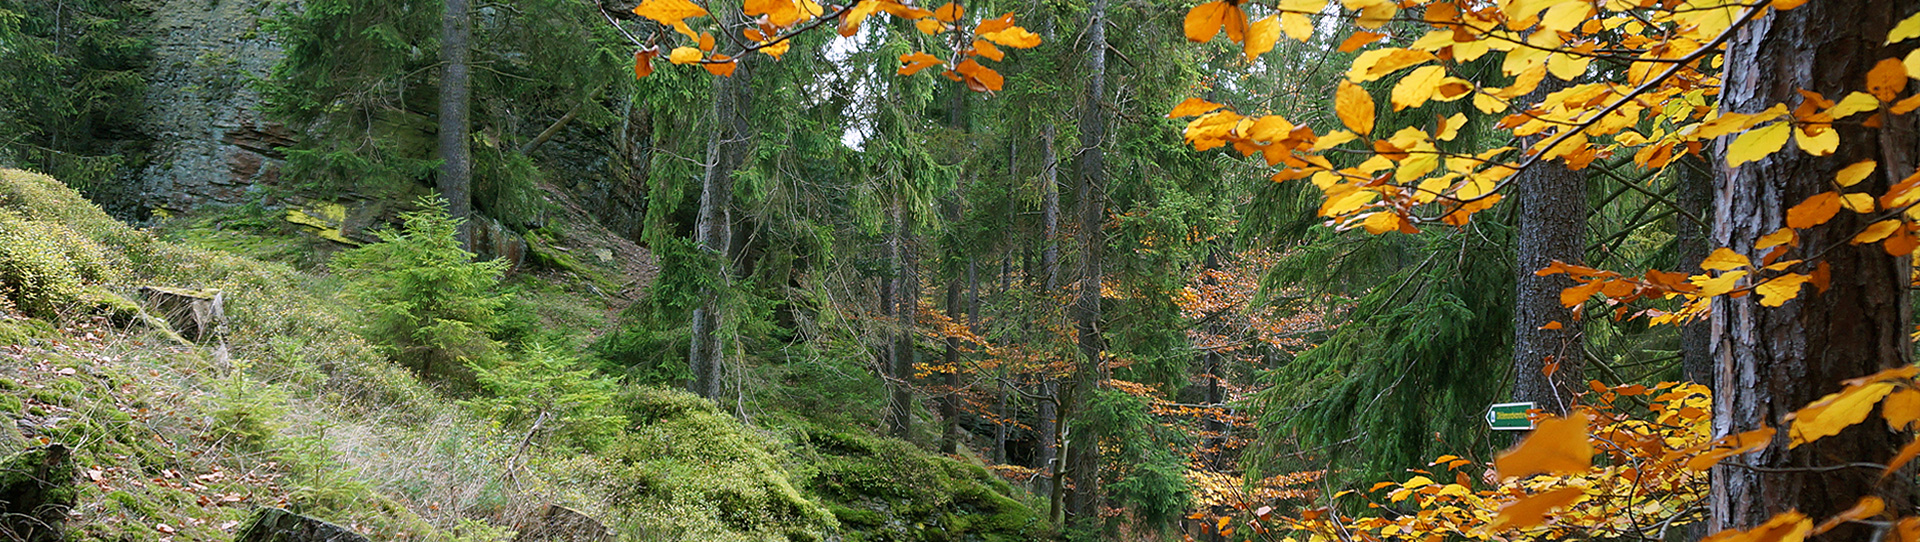 Forstlichwirtschaftliche Nutzung der Thüringer Wälder stärken!